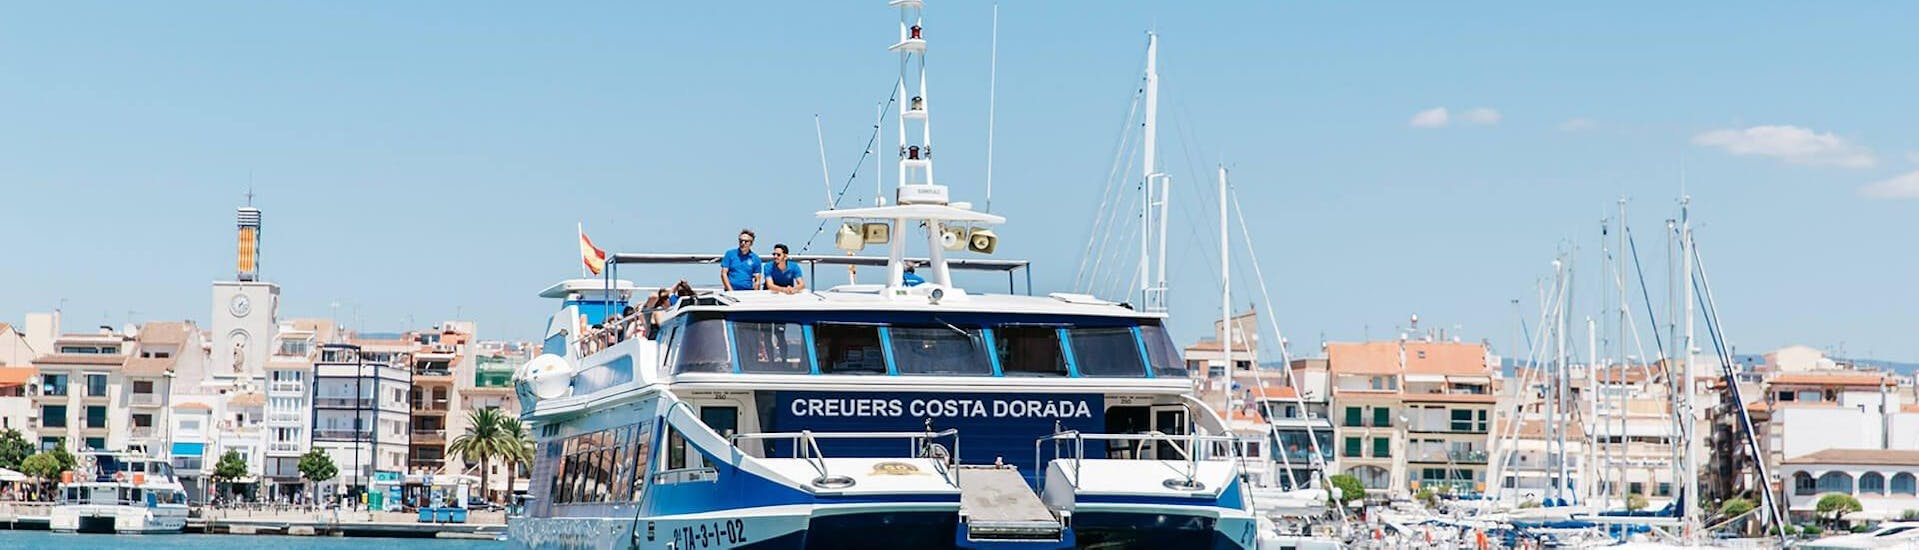 Los visitantes pueden disfrutar de las vistas durante el Paseo en barco entre Cambrils y Salou organizado por la Estació Nàutica Costa Daurada.